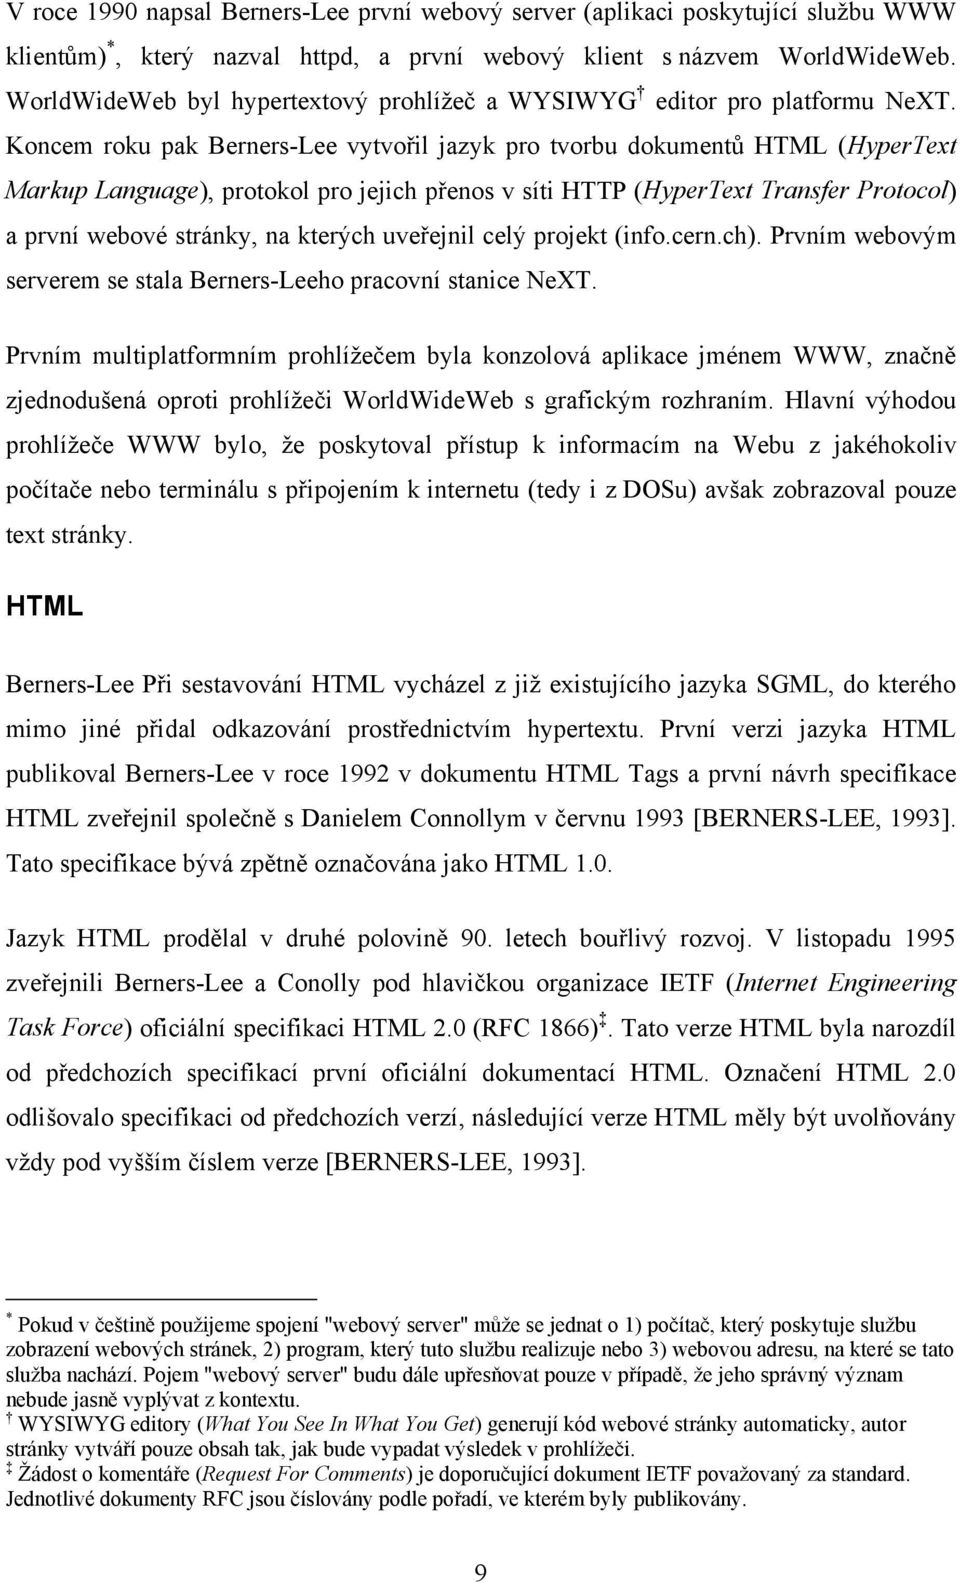 Koncem roku pak Berners-Lee vytvořil jazyk pro tvorbu dokumentů HTML (HyperText Markup Language), protokol pro jejich přenos v síti HTTP (HyperText Transfer Protocol) a první webové stránky, na